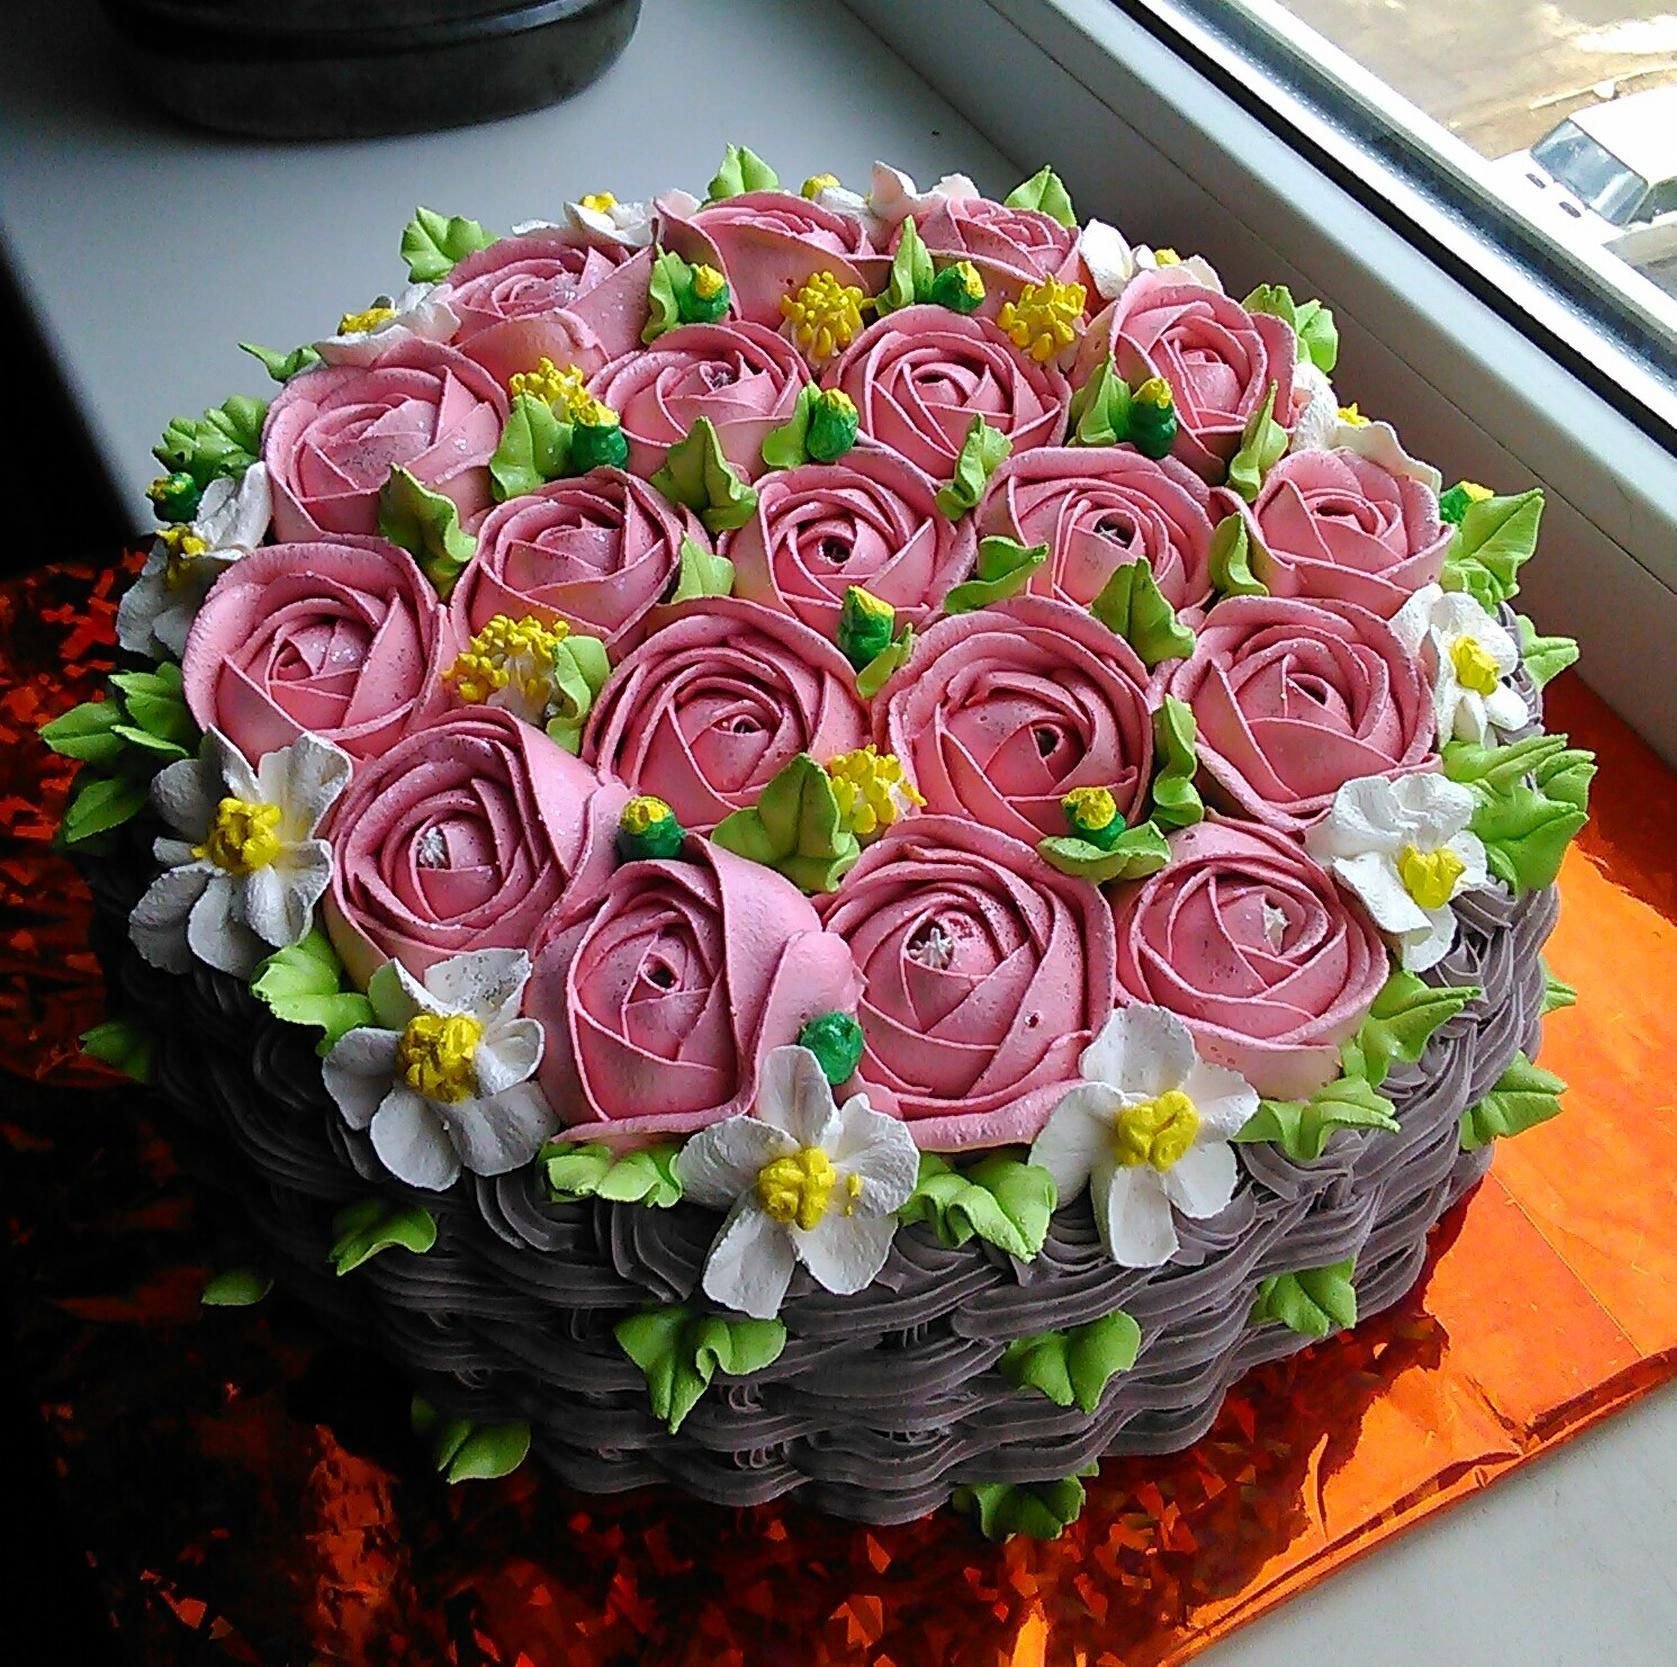 Цветочки на торт рецепт с фото